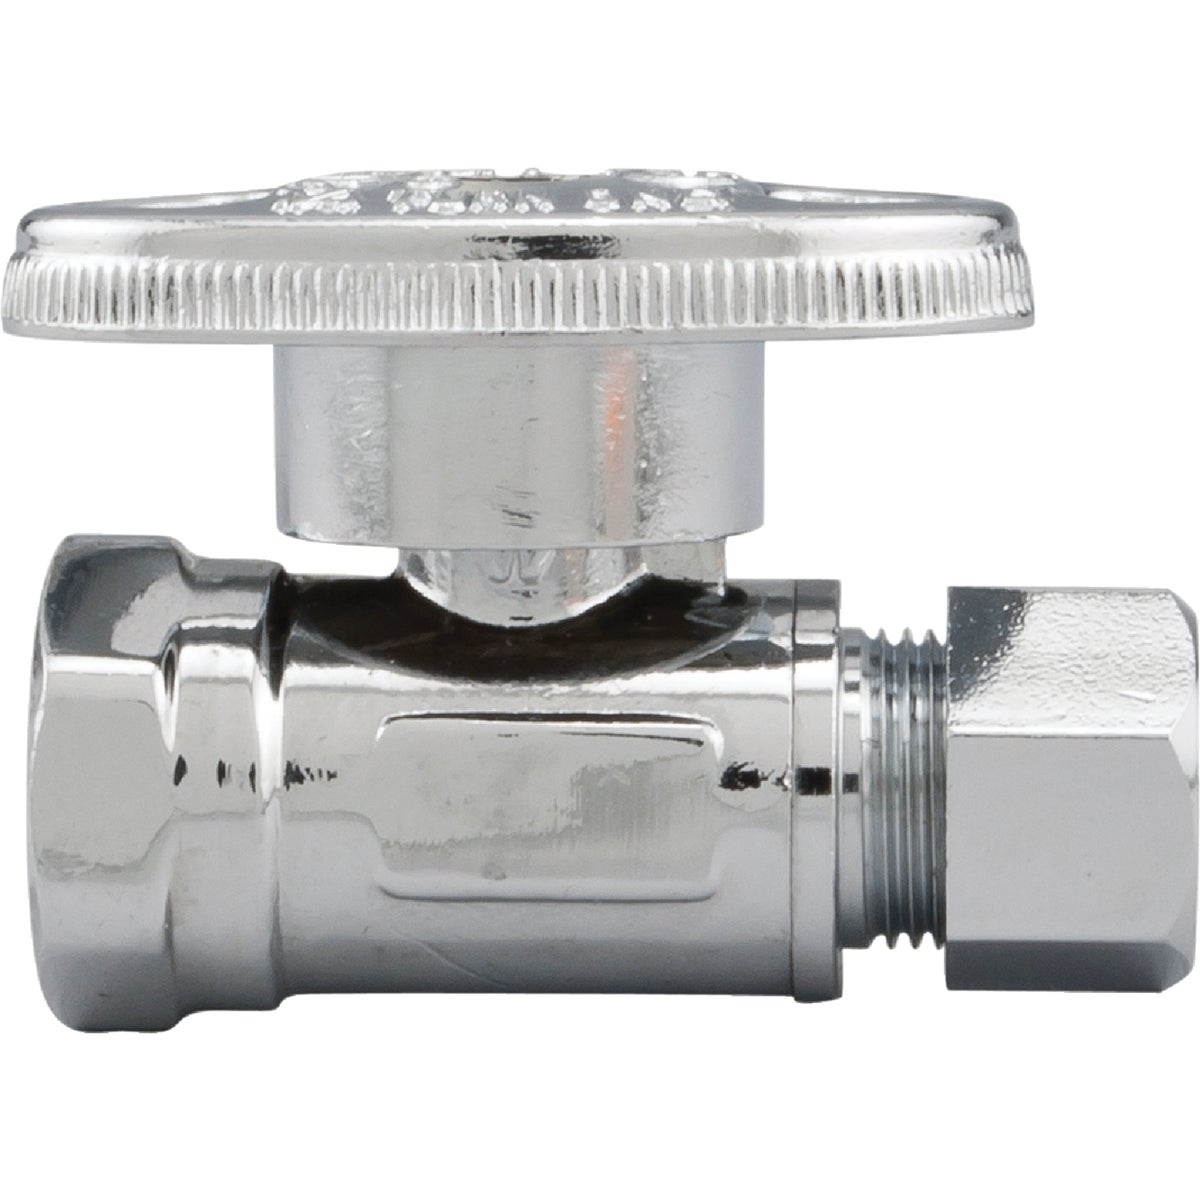 Item 400753, 1/4-turn valve controls water flow to household plumbing fixtures.